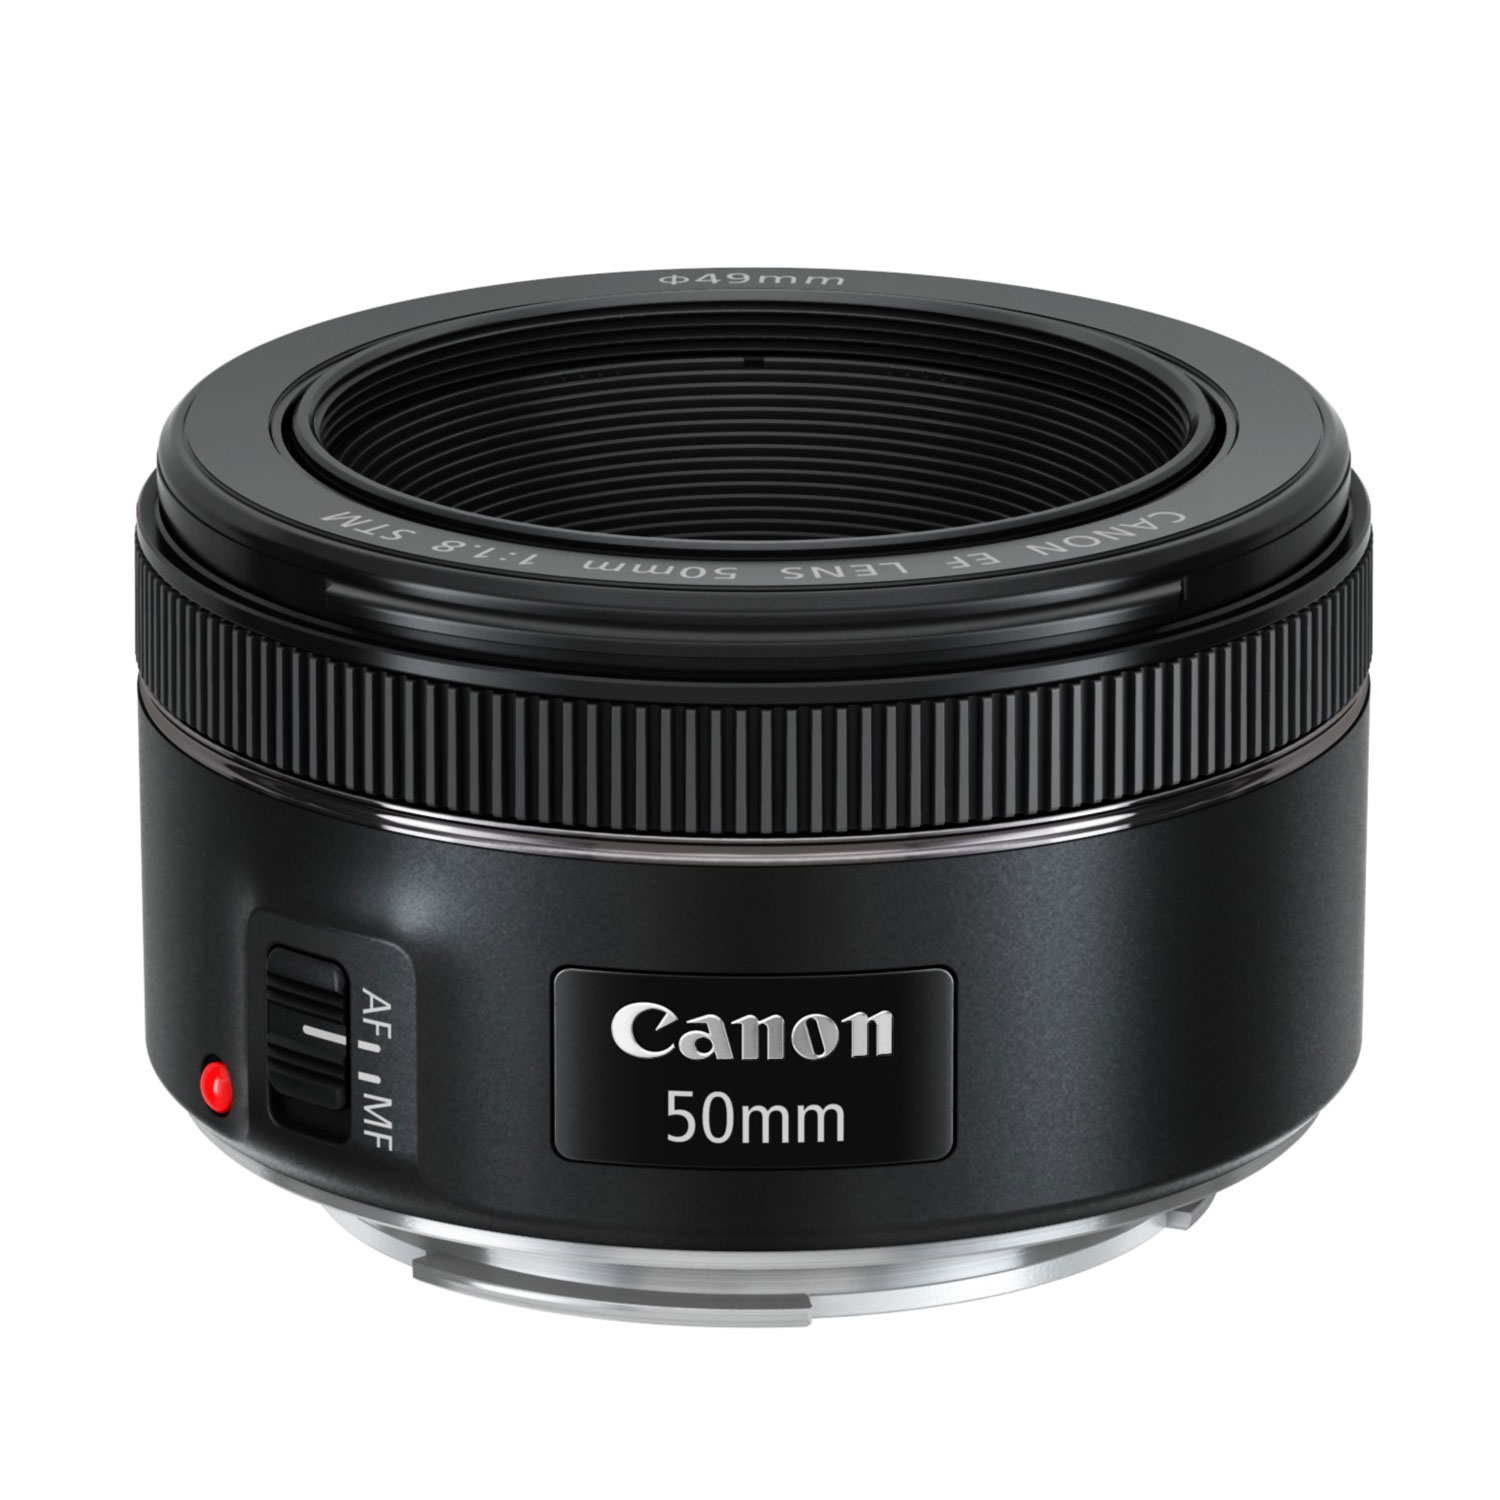 Objectif appareil photo Canon EF 50mm f/1.8 STM Objectif à longueur focale fixe